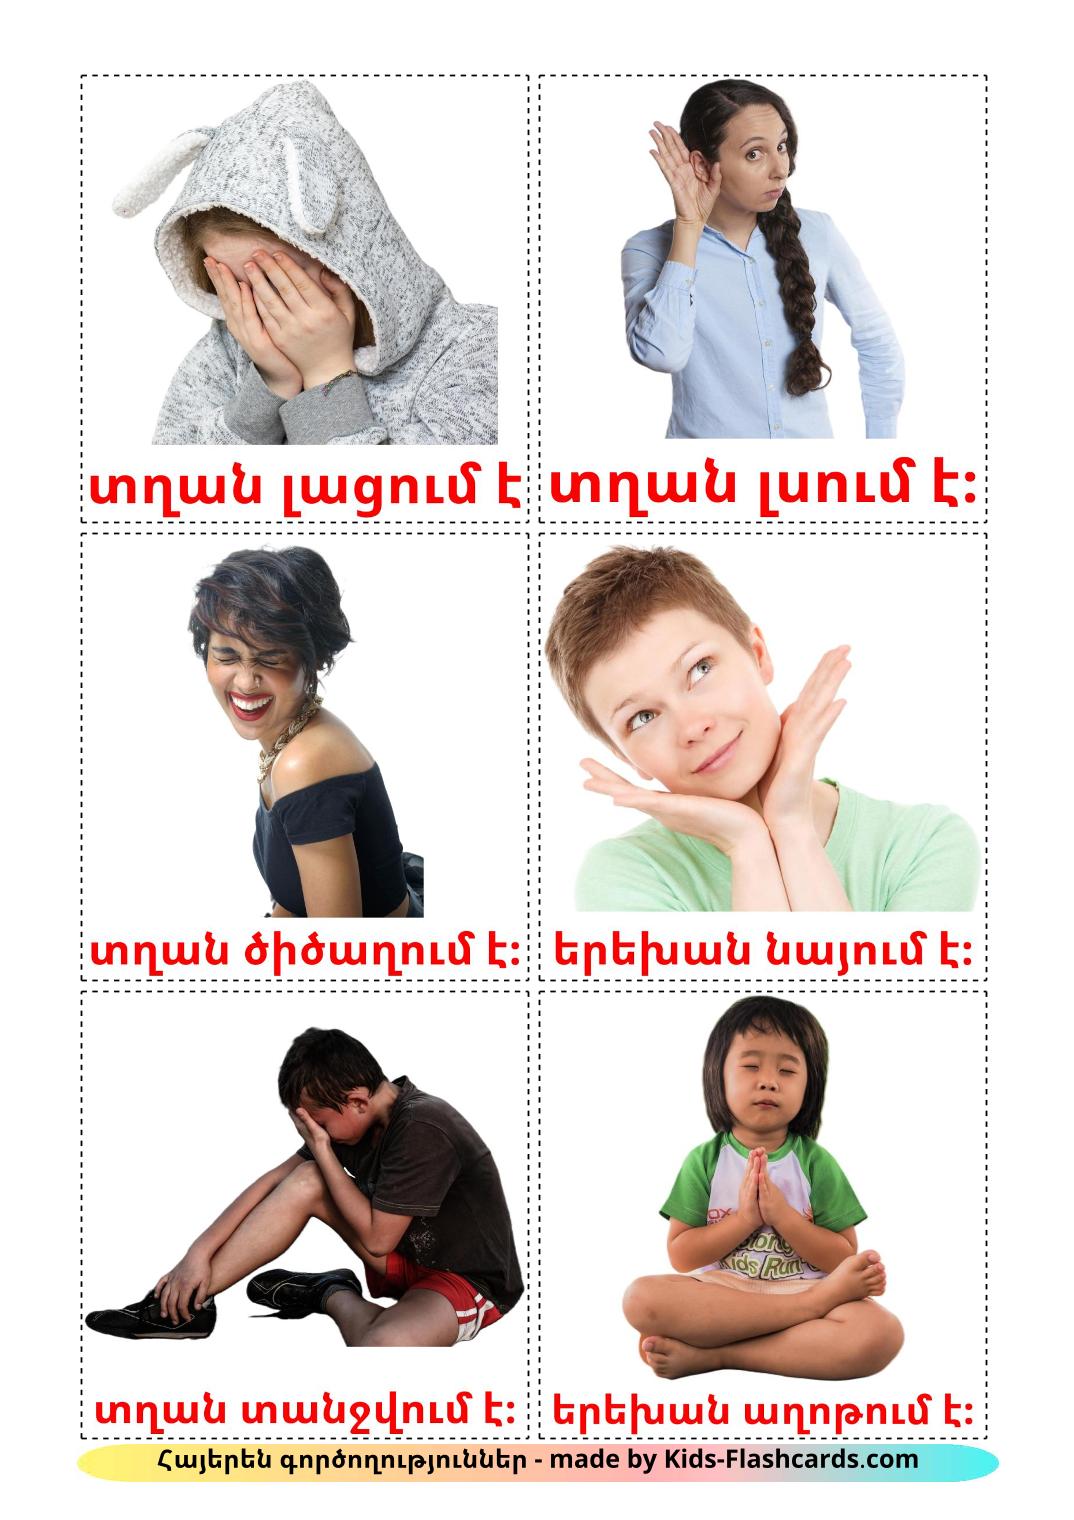 Verbos estatales - 23 fichas de armenio para imprimir gratis 